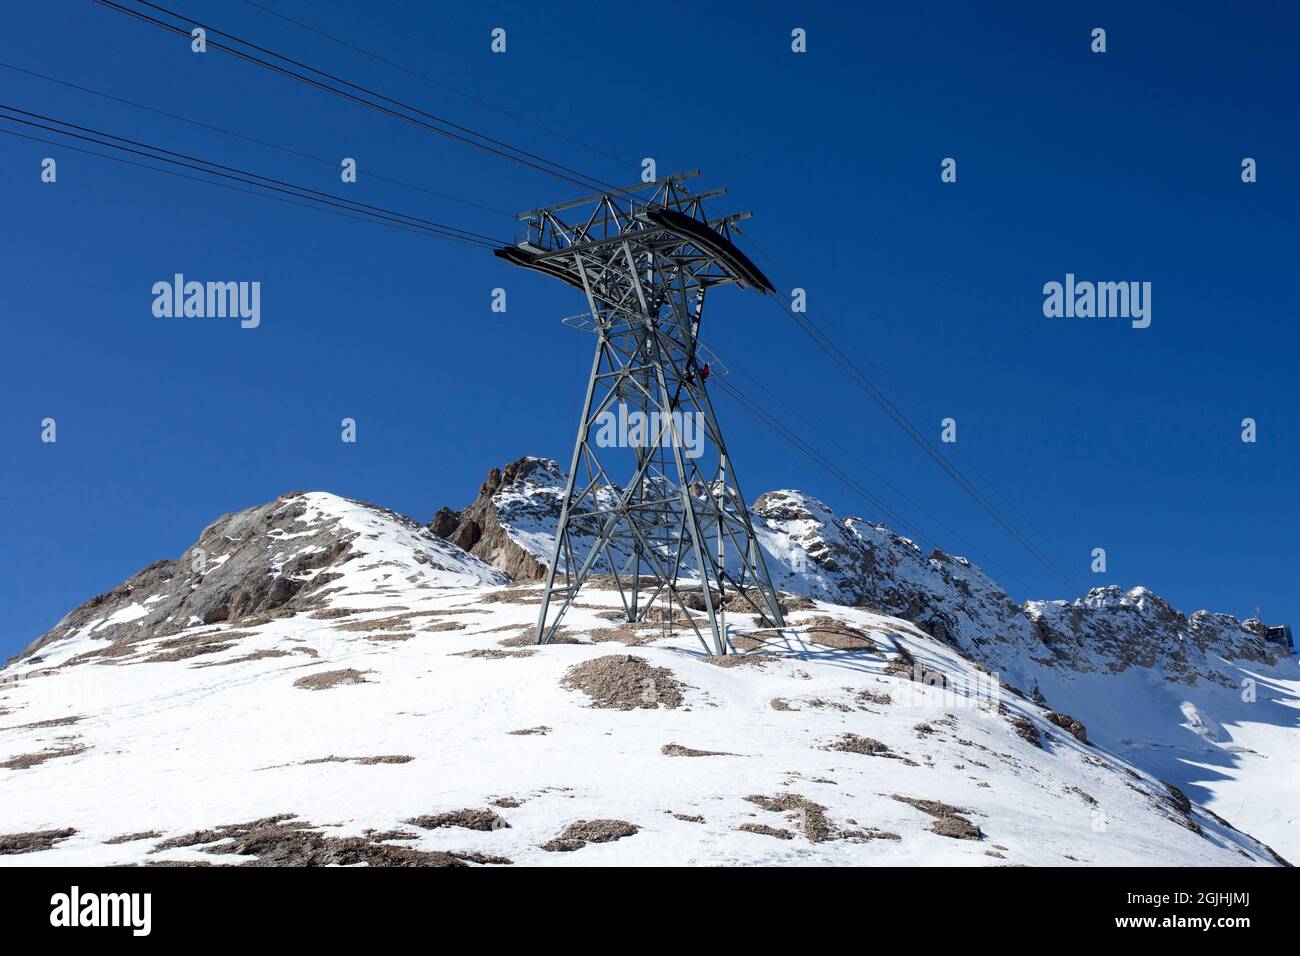 Militaires sur montant de téléphérique. Maintenance du réseau de téléphérique, Marmolada, Alpes dolomitiques, Italie Banque D'Images